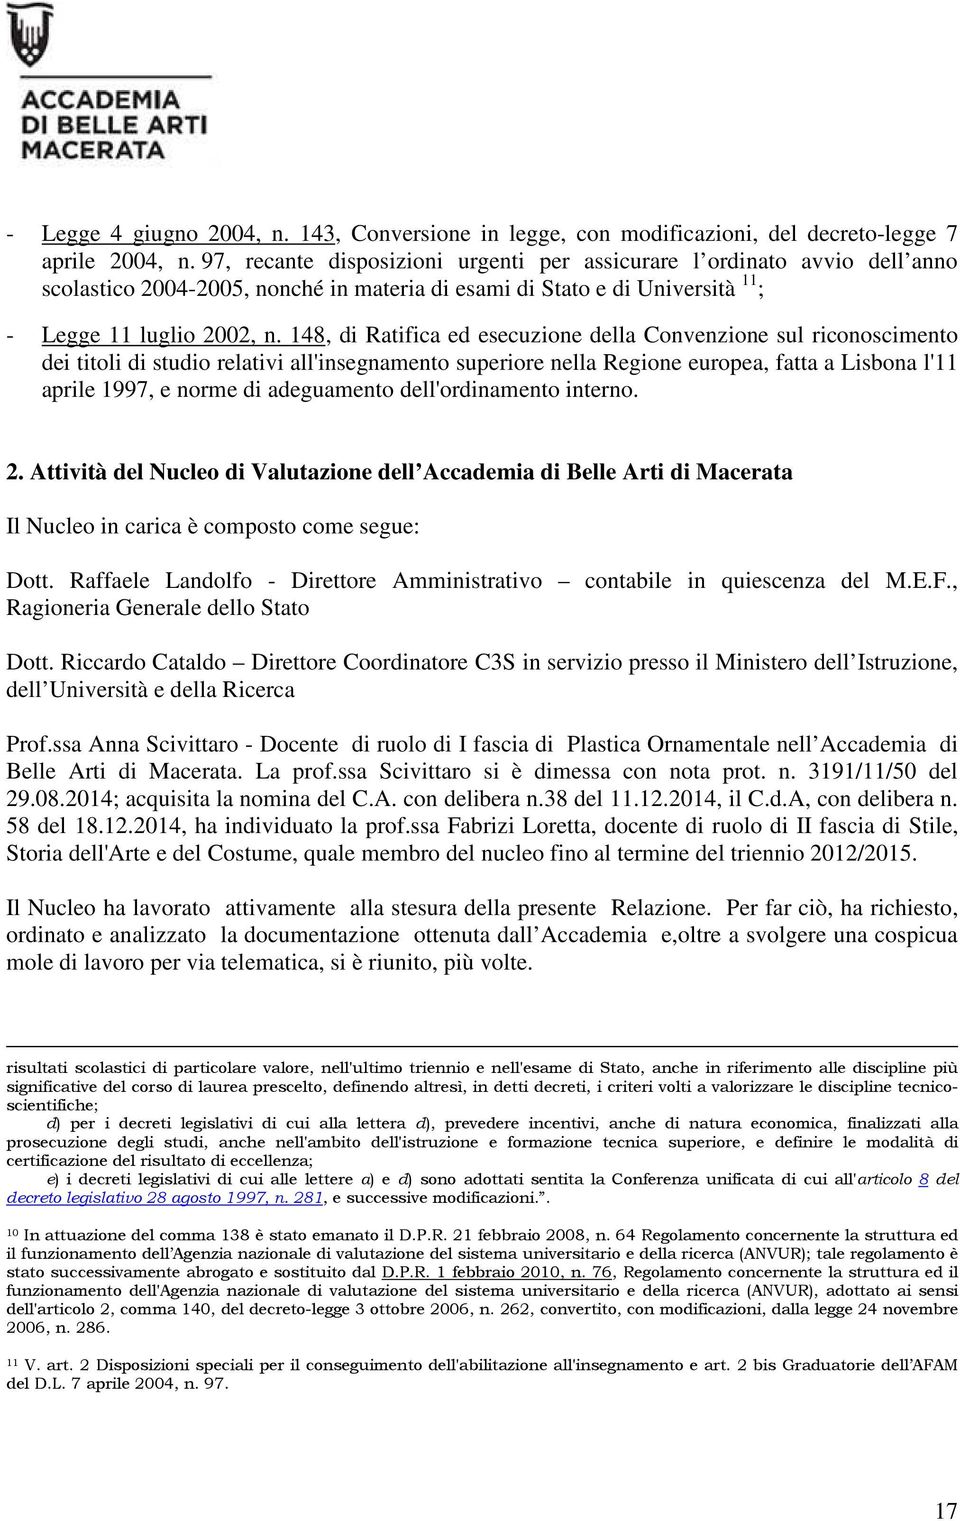 148, di Ratifica ed esecuzione della Convenzione sul riconoscimento dei titoli di studio relativi all'insegnamento superiore nella Regione europea, fatta a Lisbona l'11 aprile 1997, e norme di